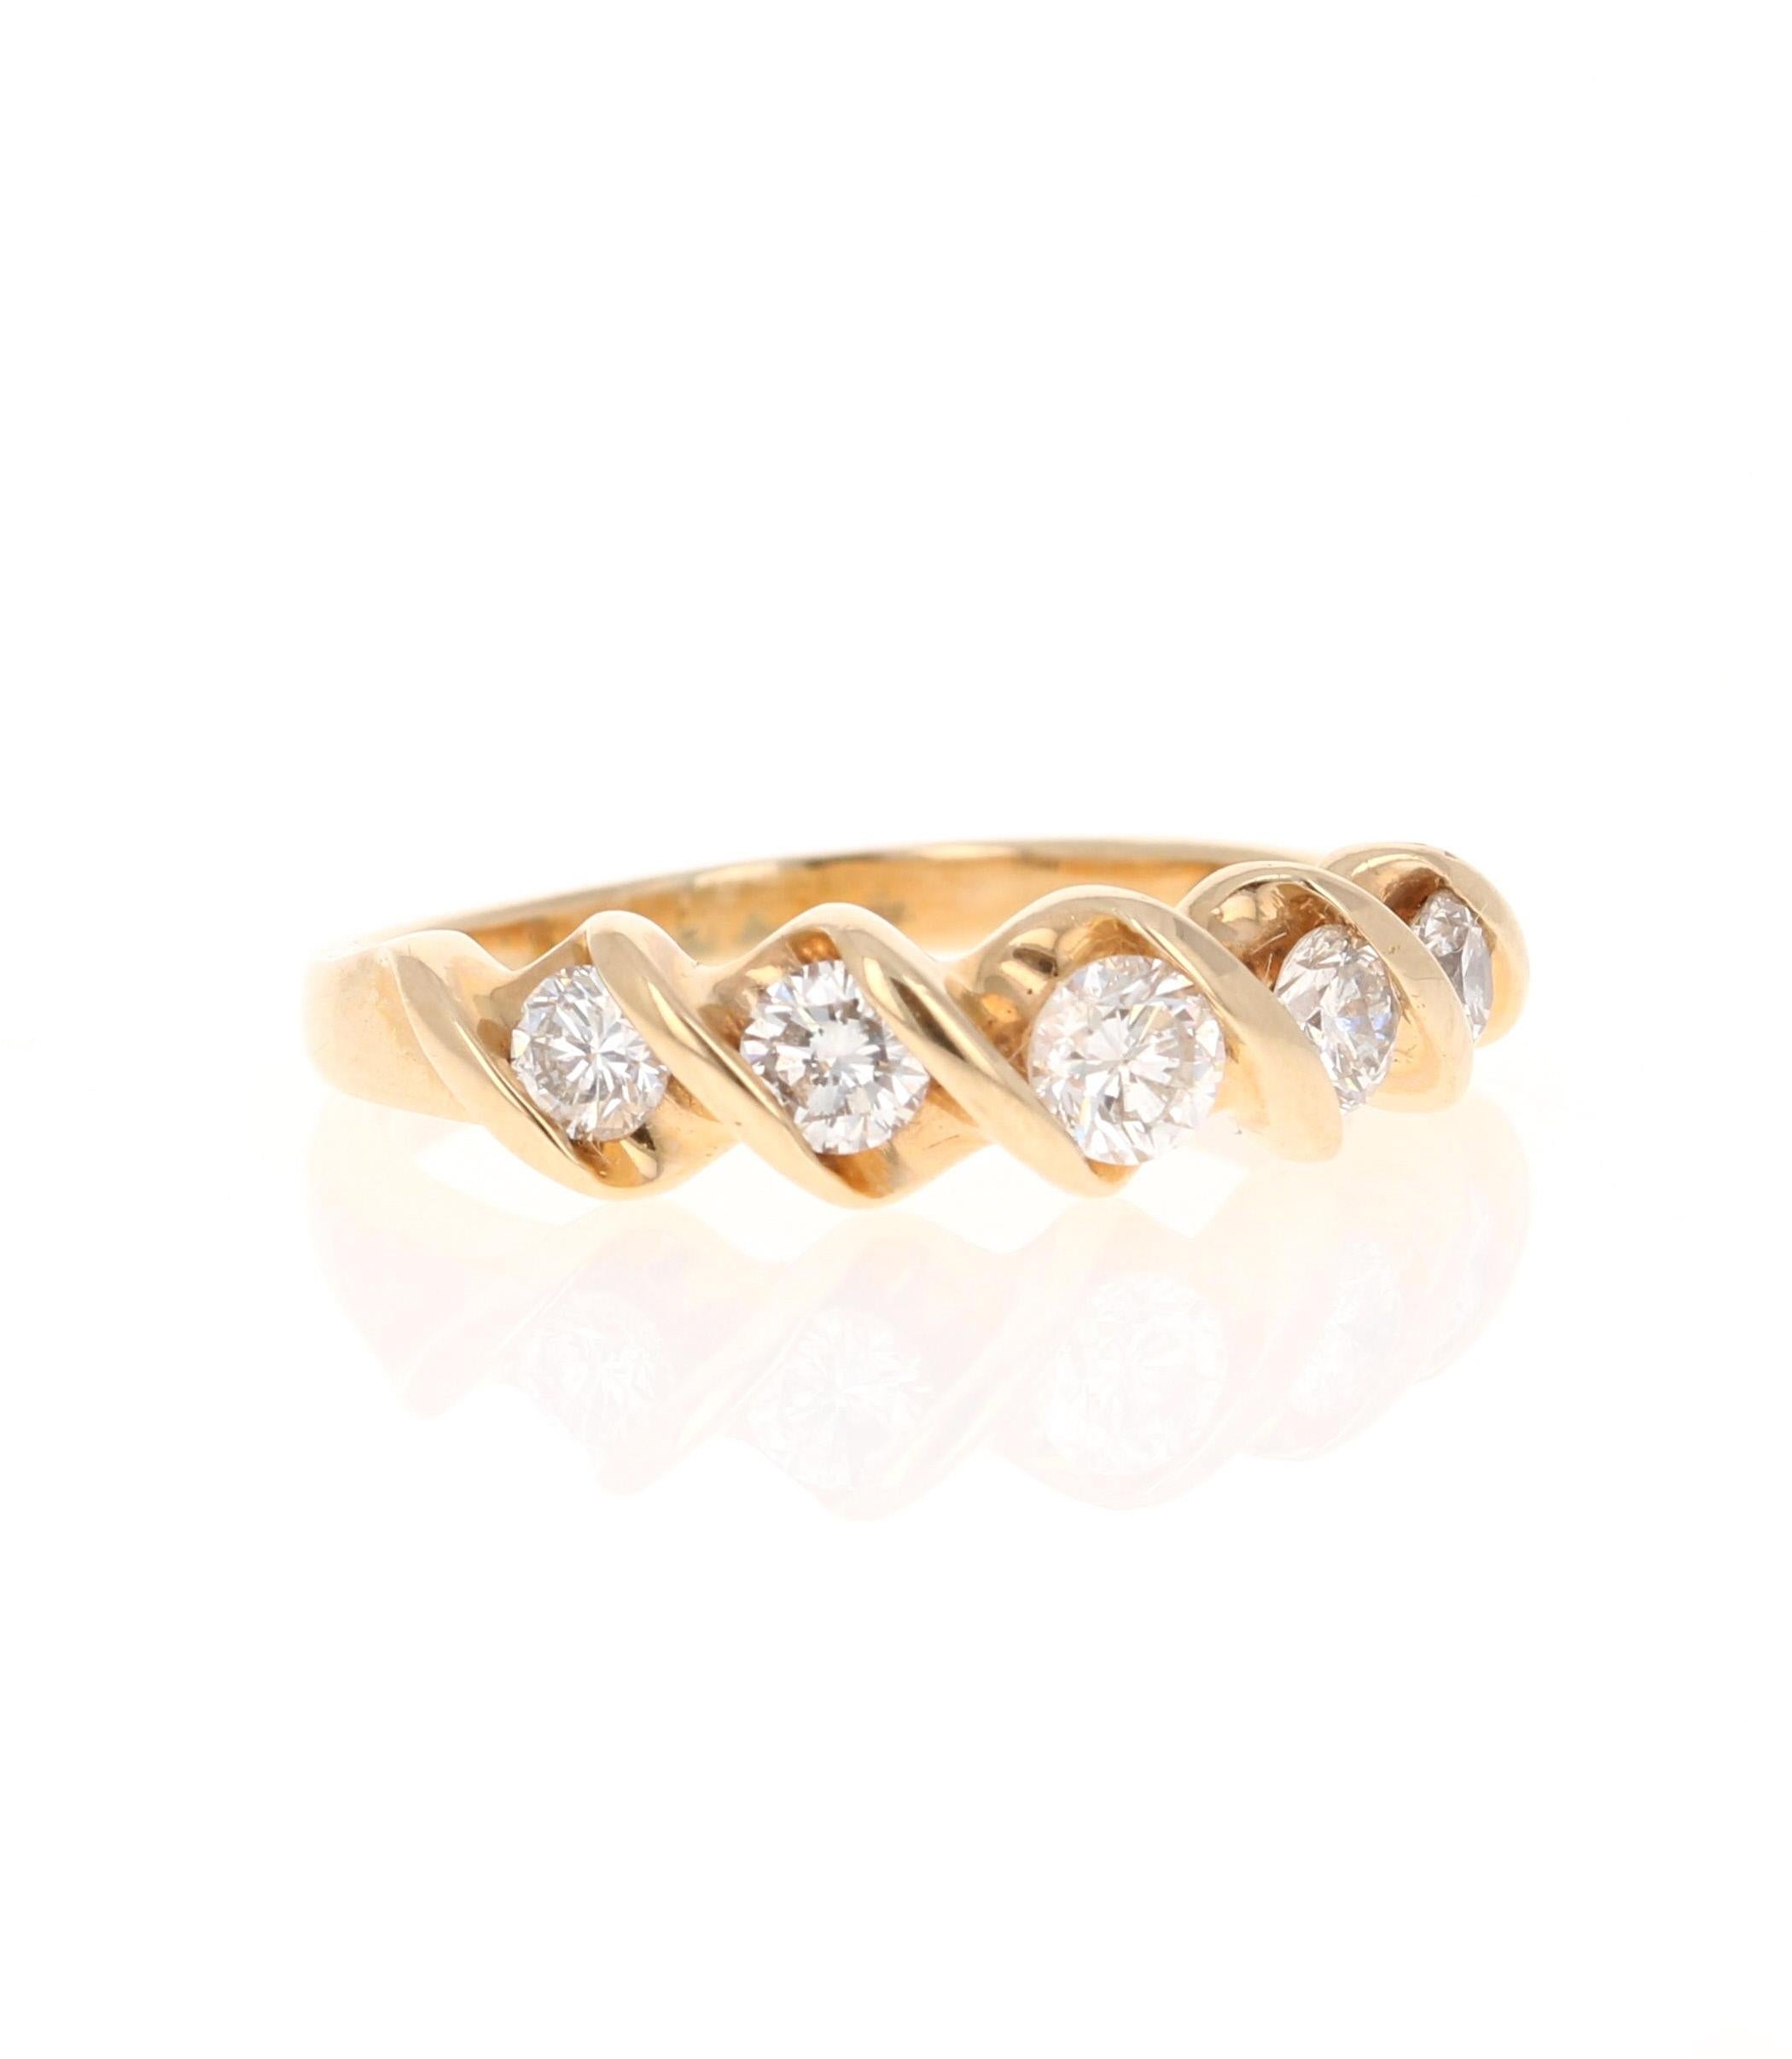 Ein wunderschönes Band, das als einzelnes Band getragen oder mit anderen Bändern in anderen Goldfarben kombiniert werden kann! 

Dieser Ring hat 5 Diamanten im Rundschliff mit einem Gewicht von 0,55 Karat. Die Reinheit und Farbe der Diamanten sind